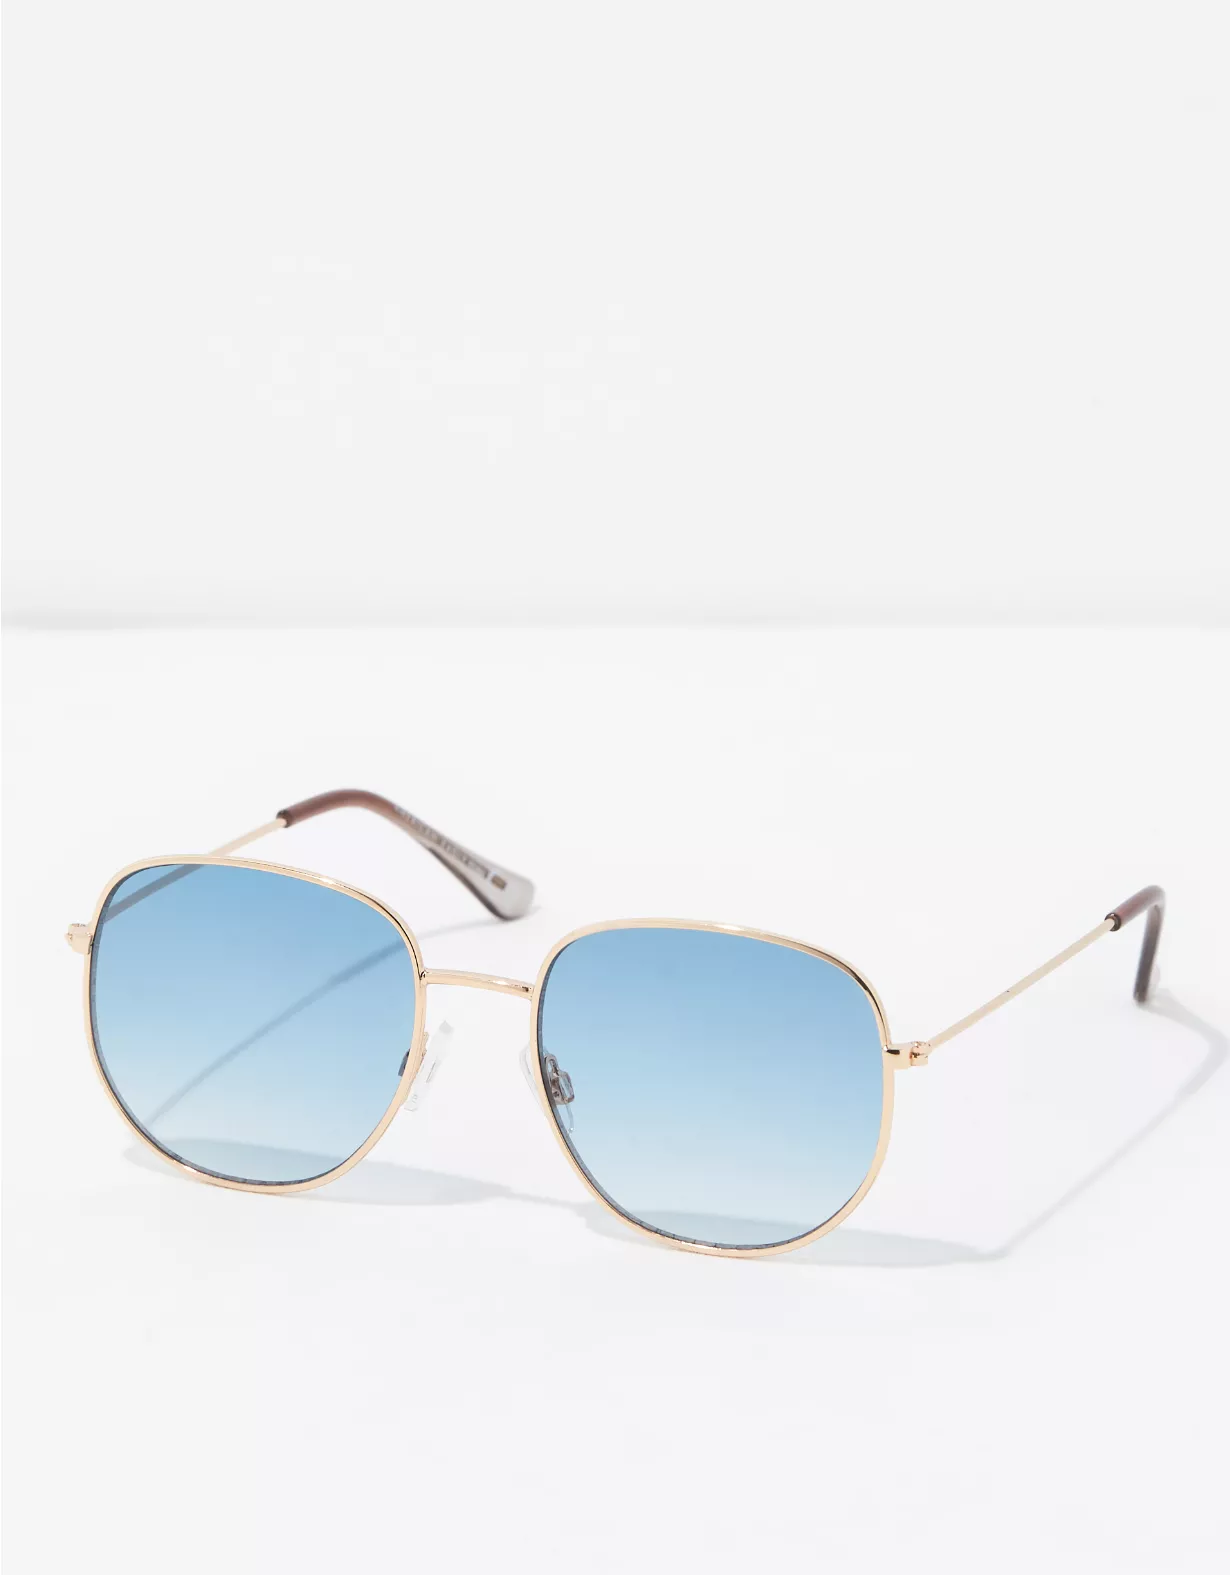 AEO Blue Lens Sunglasses